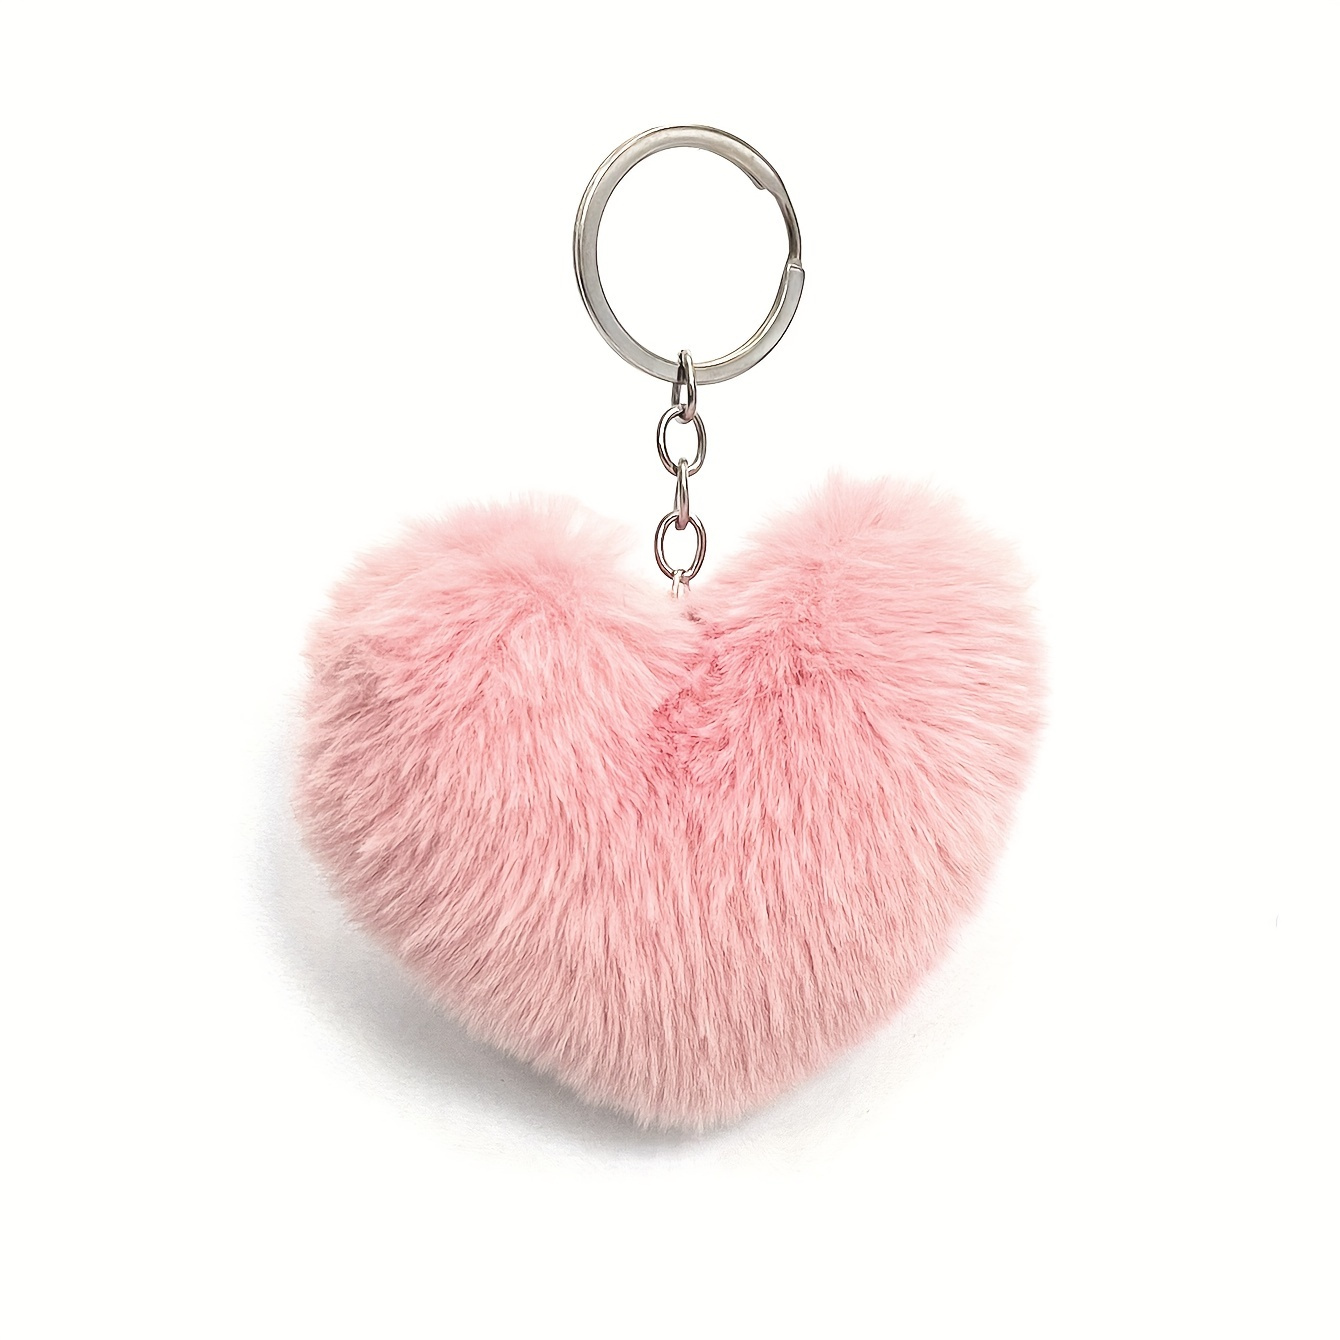 6 Large Fluffy Genuine Fur Pom Pom Handmade puffy Keychain Ball Car  Keyring / Bag Purse Charm ( Blue)